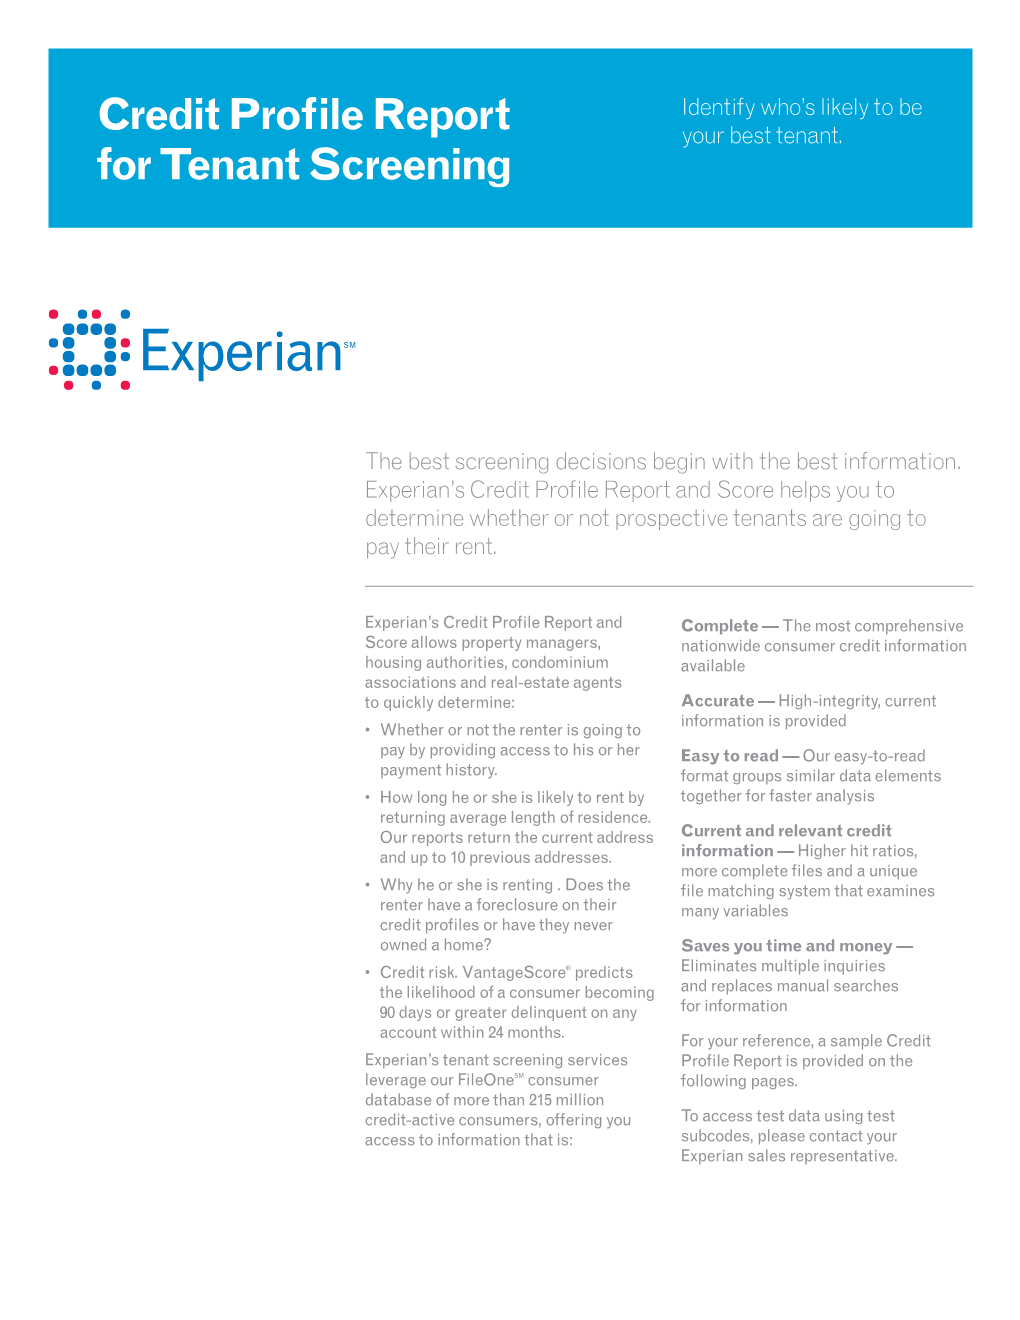 Credit Profile Report for Tenant Screening